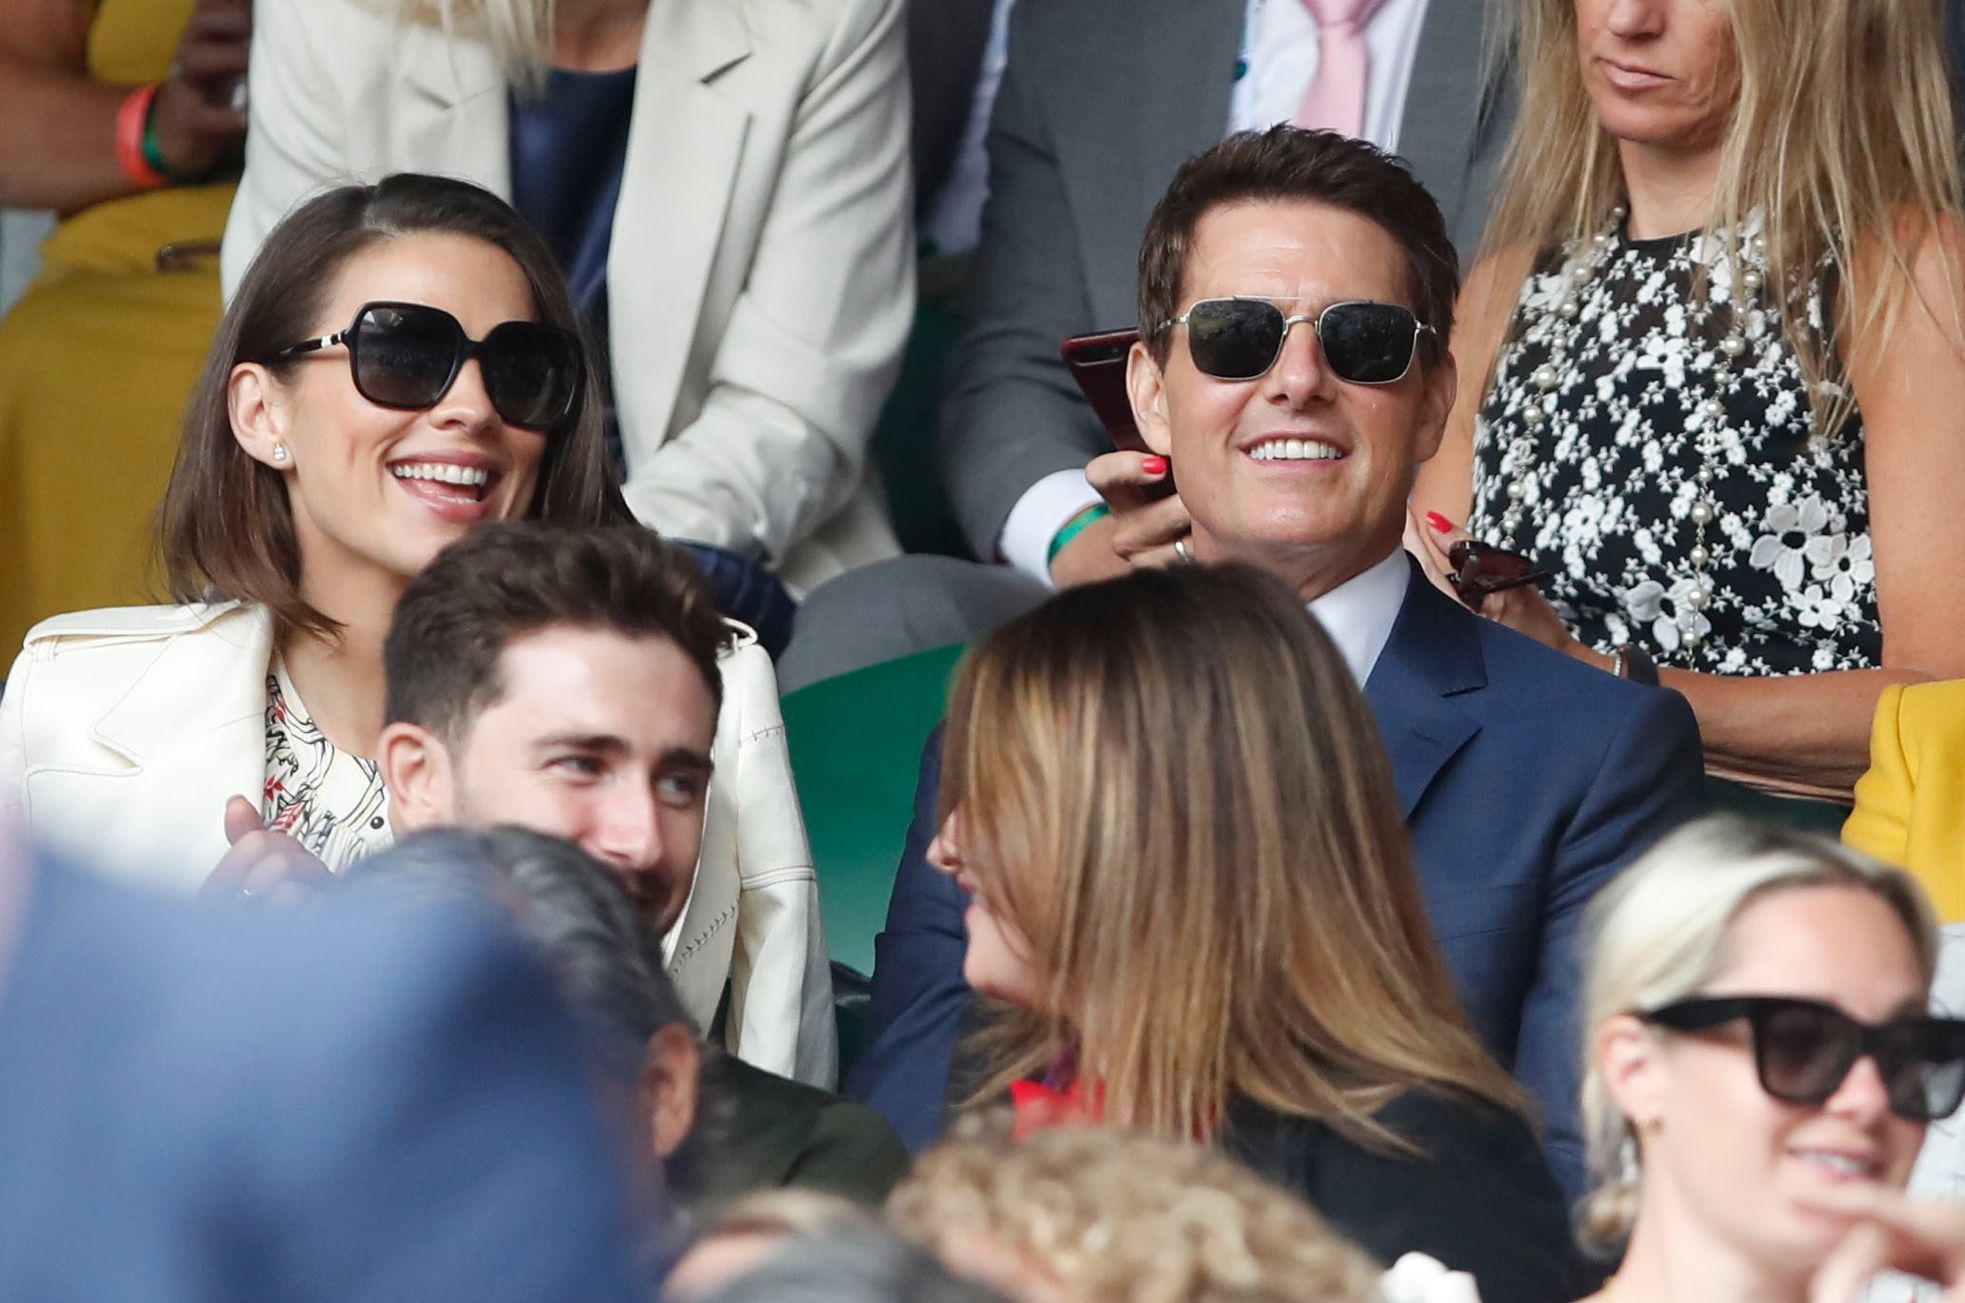 Hayley Atwellová a Tom Cruise v hledišti finále Wimbledonu 2021 Karolína Plíšková - Ashleigh Bartyová.